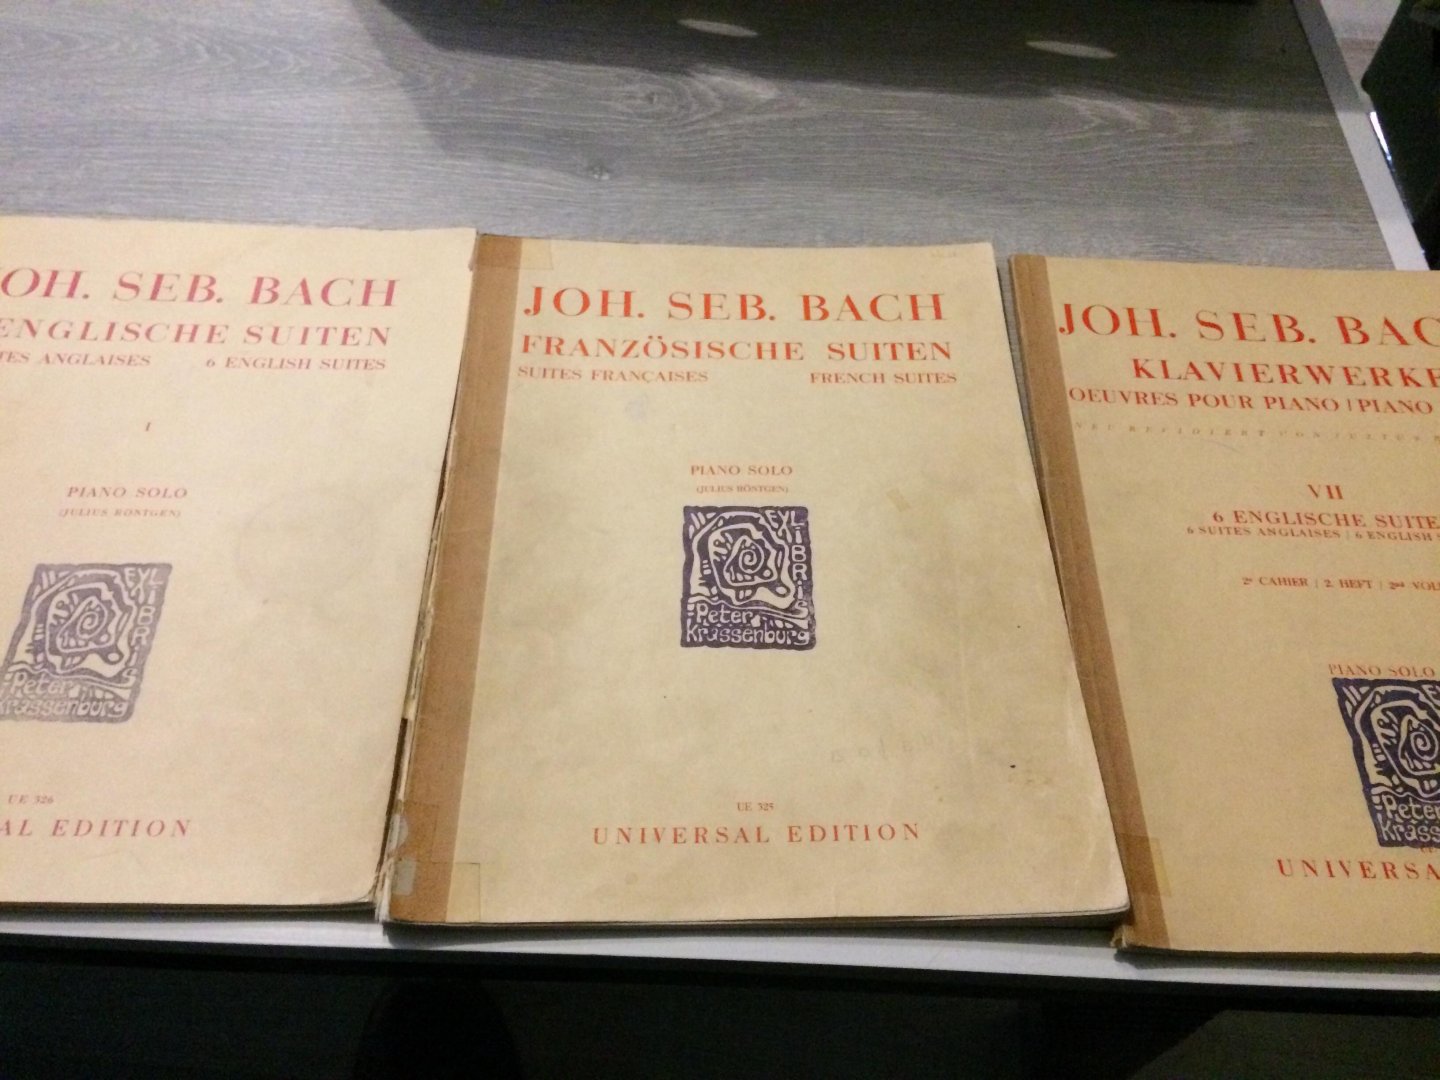 Joh Seb Bach - 6 Englische suiten,Franzosische suiten,Klavierwerke